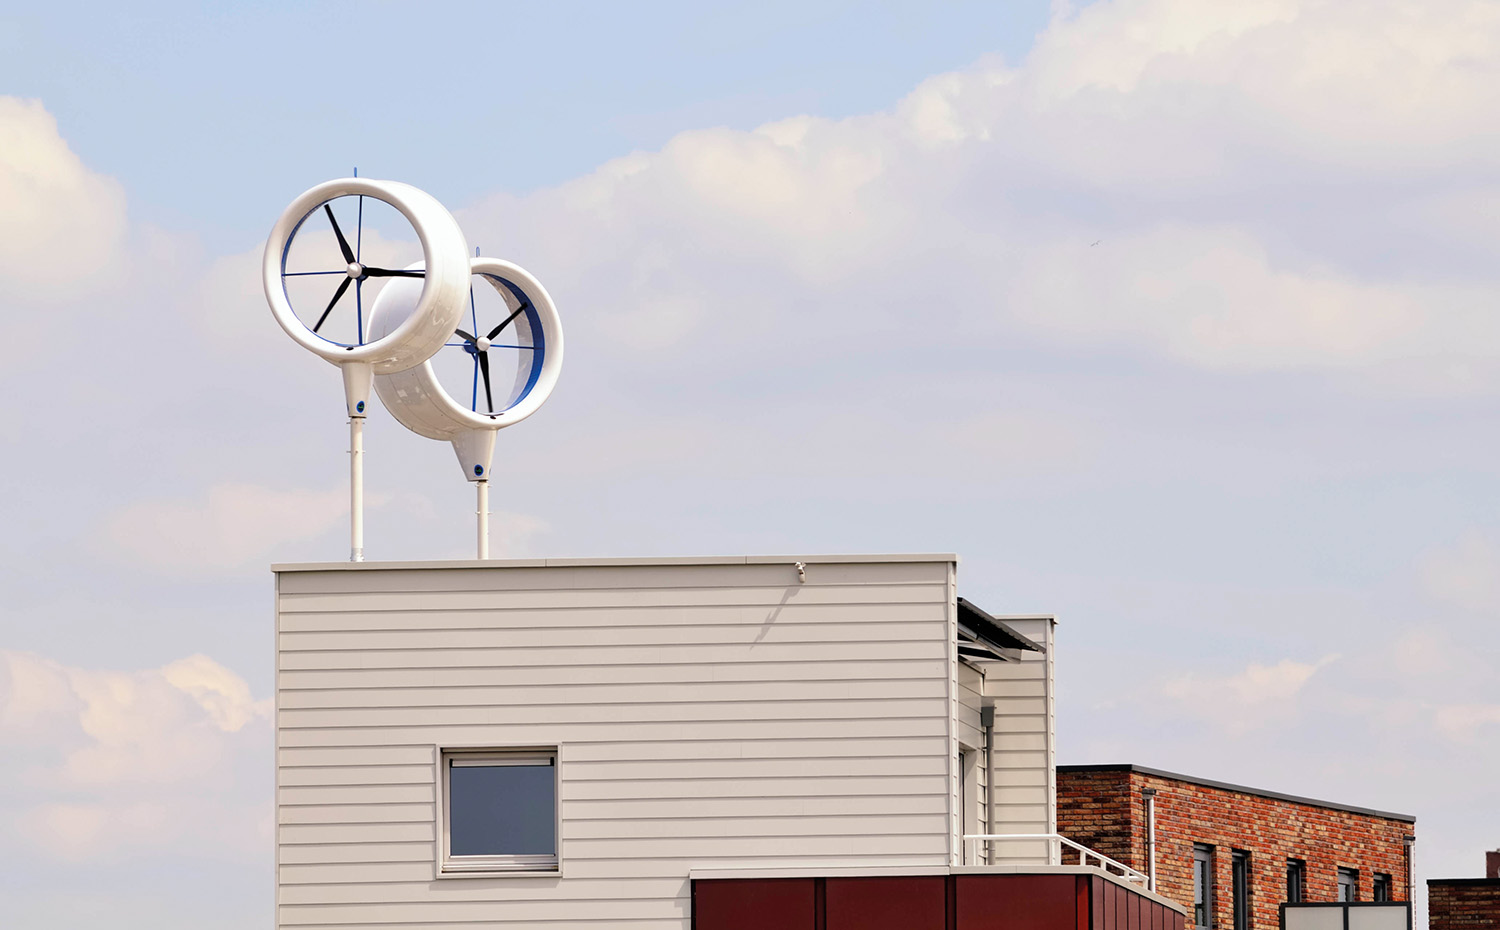 residential-wind-turbines. Las turbinas mini eólicas residenciales son aparatos que no pesan más de 100 kg, generan un ruido inferior a los 45 dB y tienen un coste alrededor de los 3.000 €. Eso las convierte en el recurso energético con el retorno de inversión más rápido y rentable